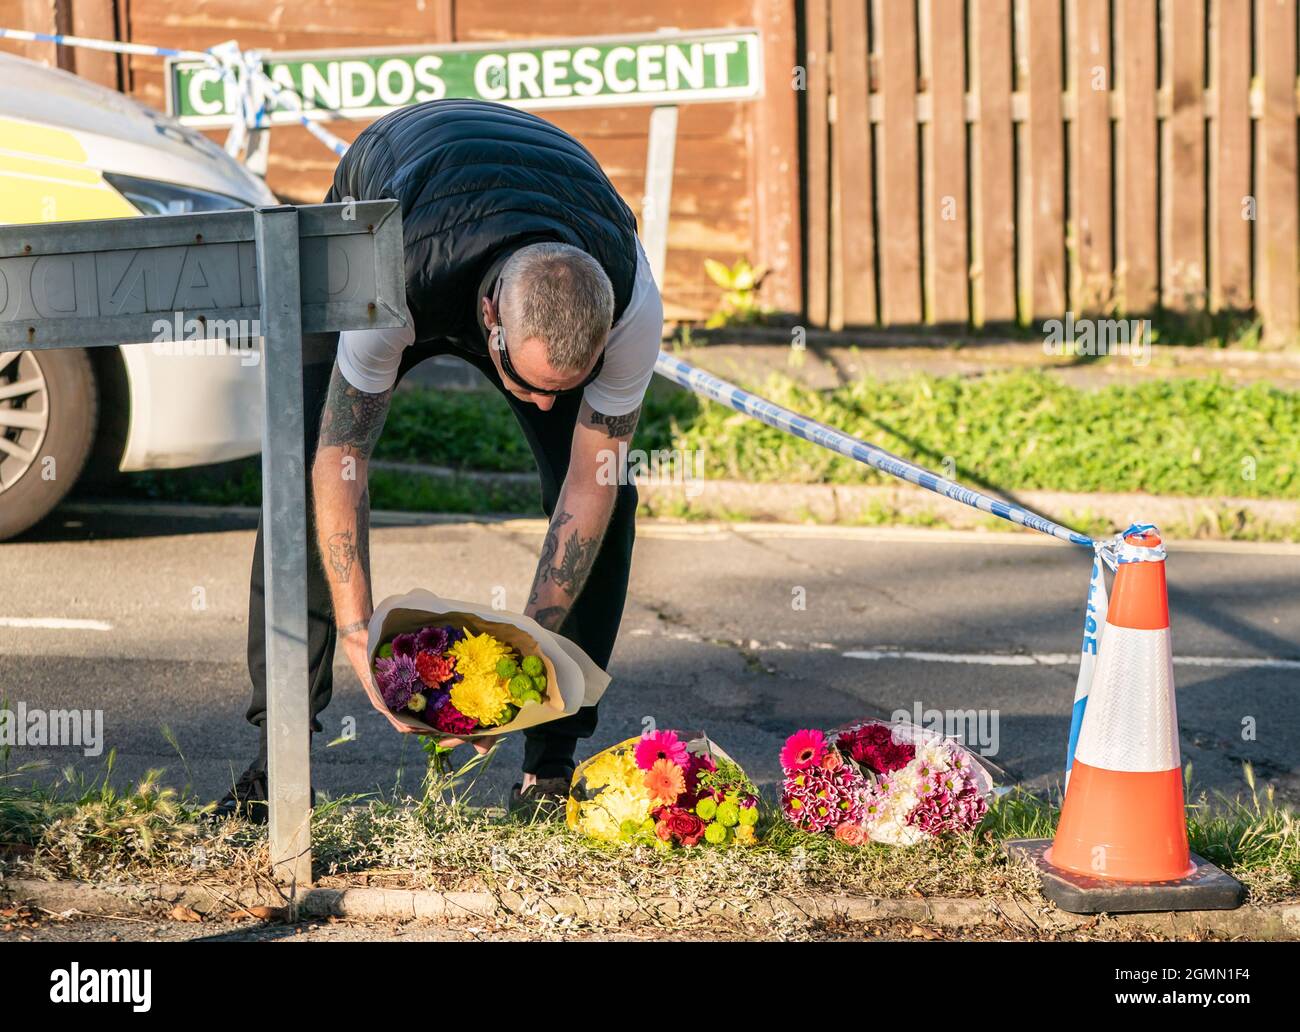 Un homme laisse des fleurs sur la scène de Chandos Crescent à Killamarsh, près de Sheffield, où quatre personnes ont été trouvées mortes dans une maison dimanche. La police de Derbyshire a déclaré qu'un homme est en garde à vue et qu'il ne cherche personne d'autre en relation avec la mort. Date de la photo: Lundi 20 septembre 2021. Banque D'Images